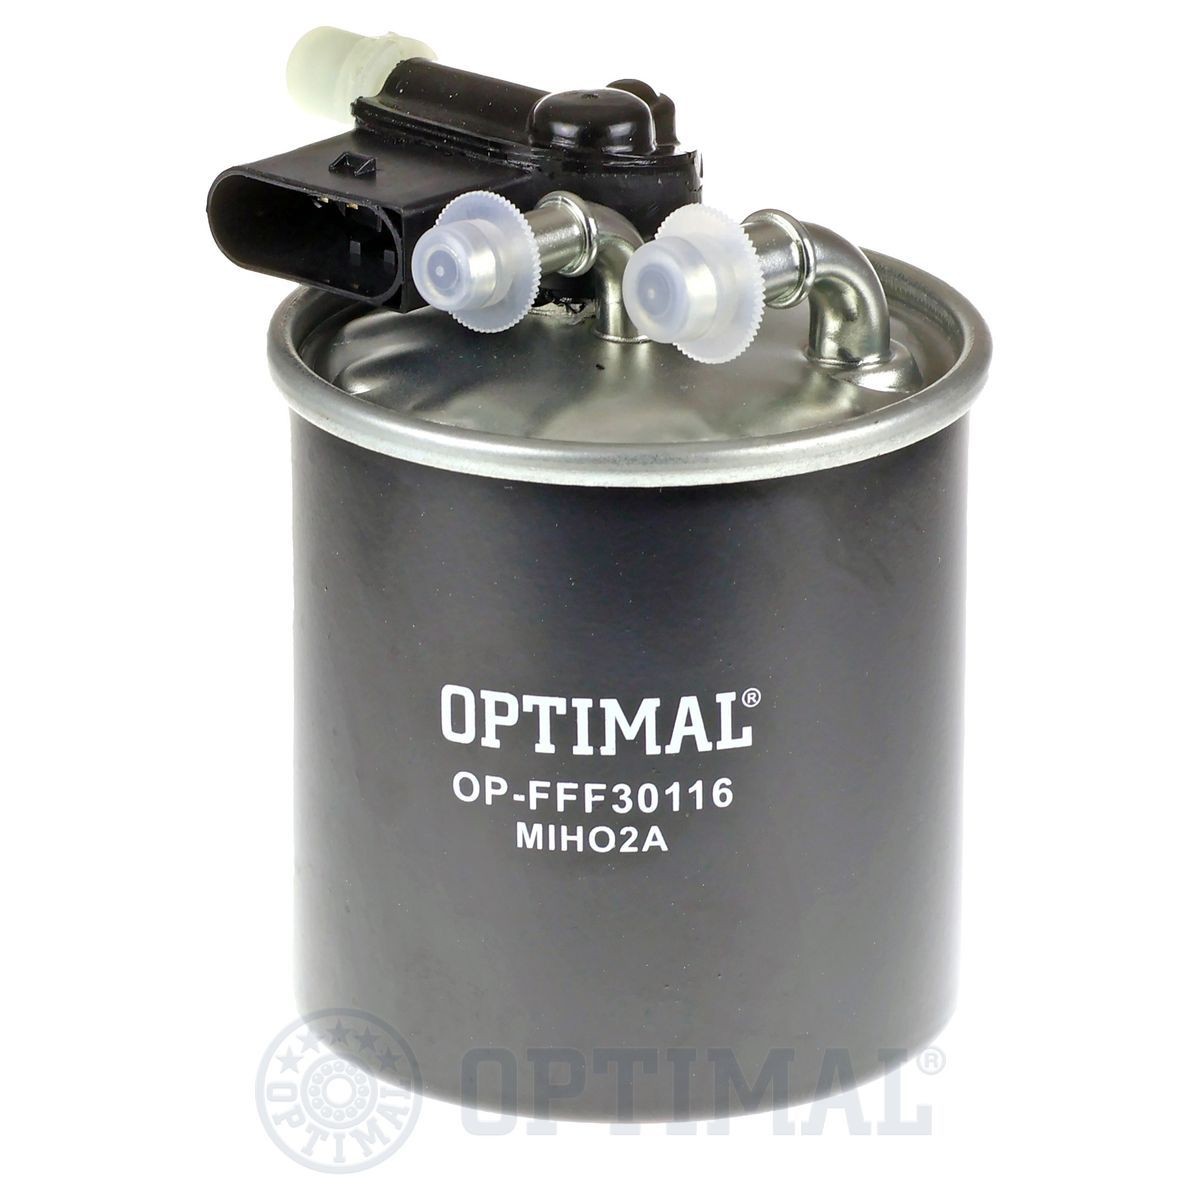 OPTIMAL OP-FFF30116 Fuel filter 642-090-31-52